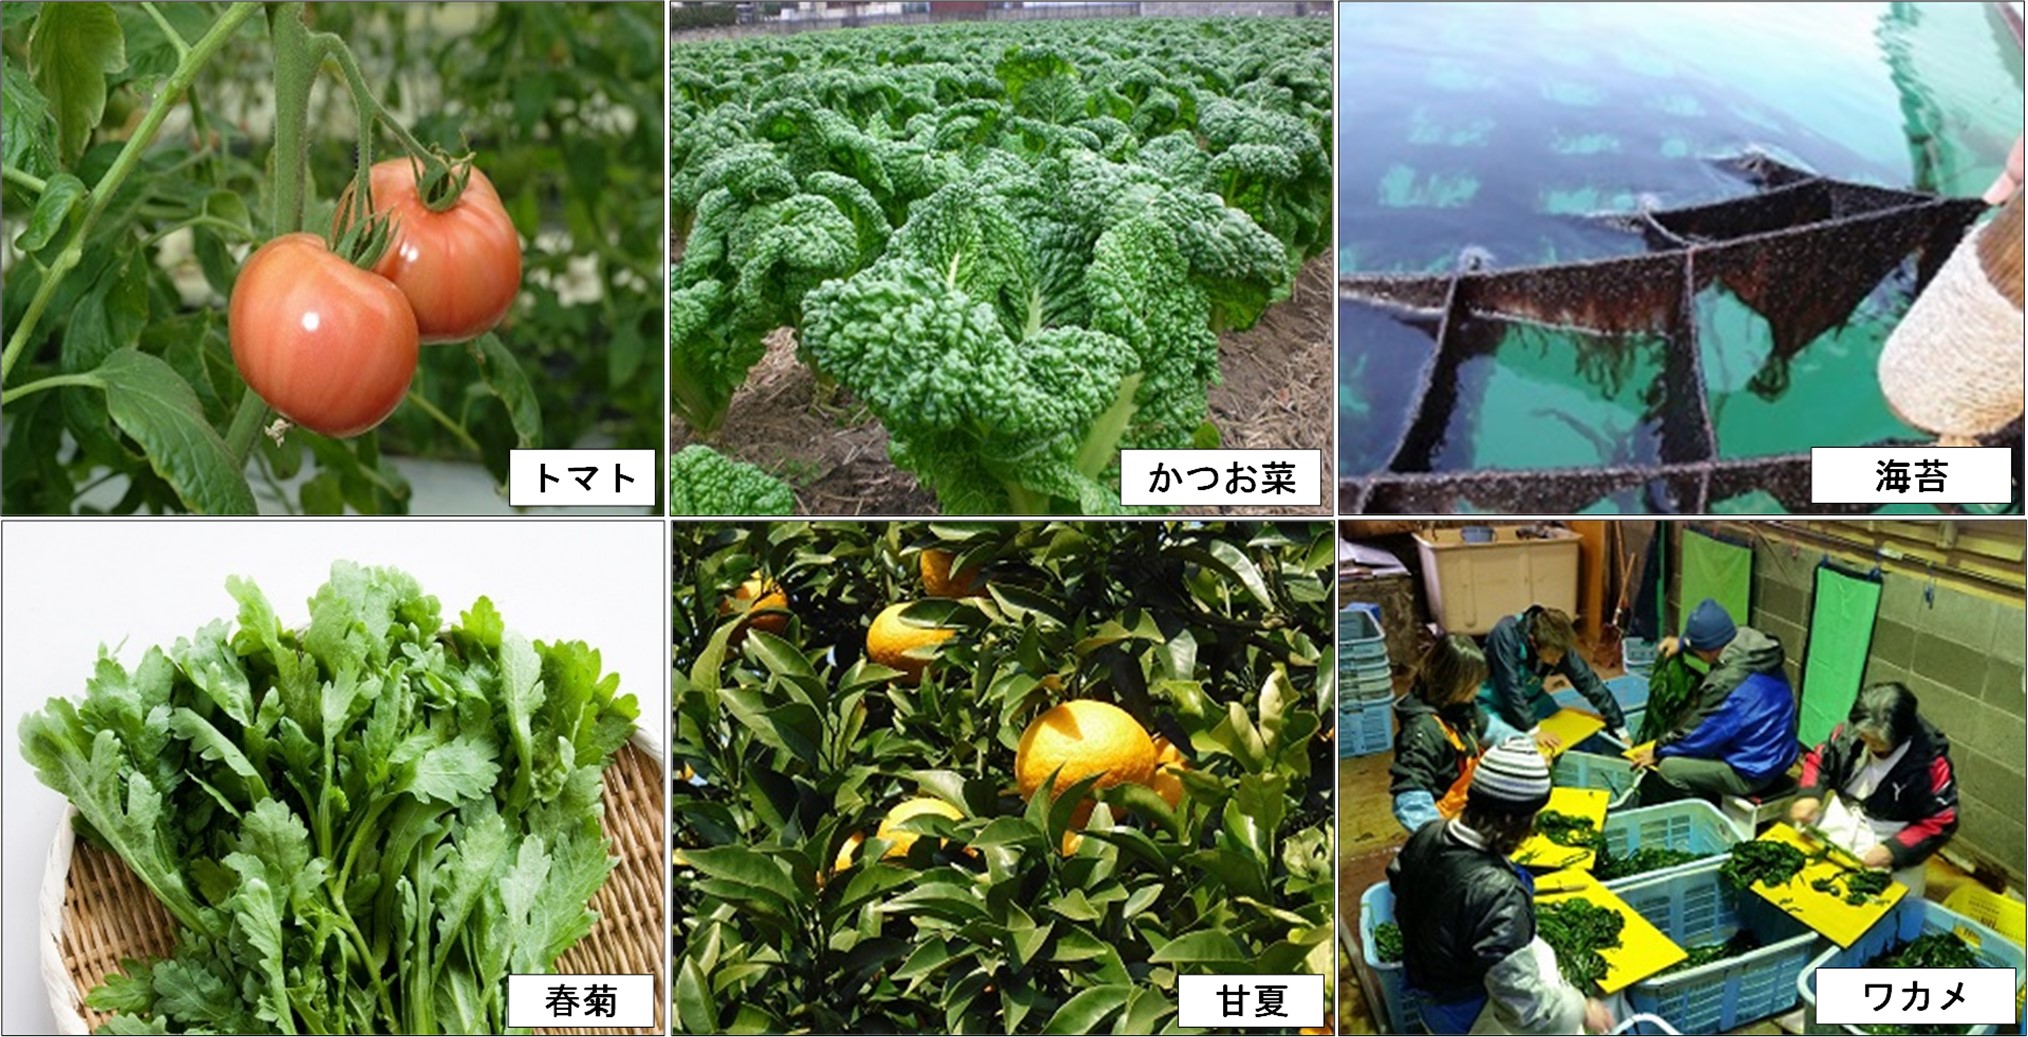 市内産の農水産物の画像。トマト、かつお菜、海苔、春菊、甘夏、ワカメ。